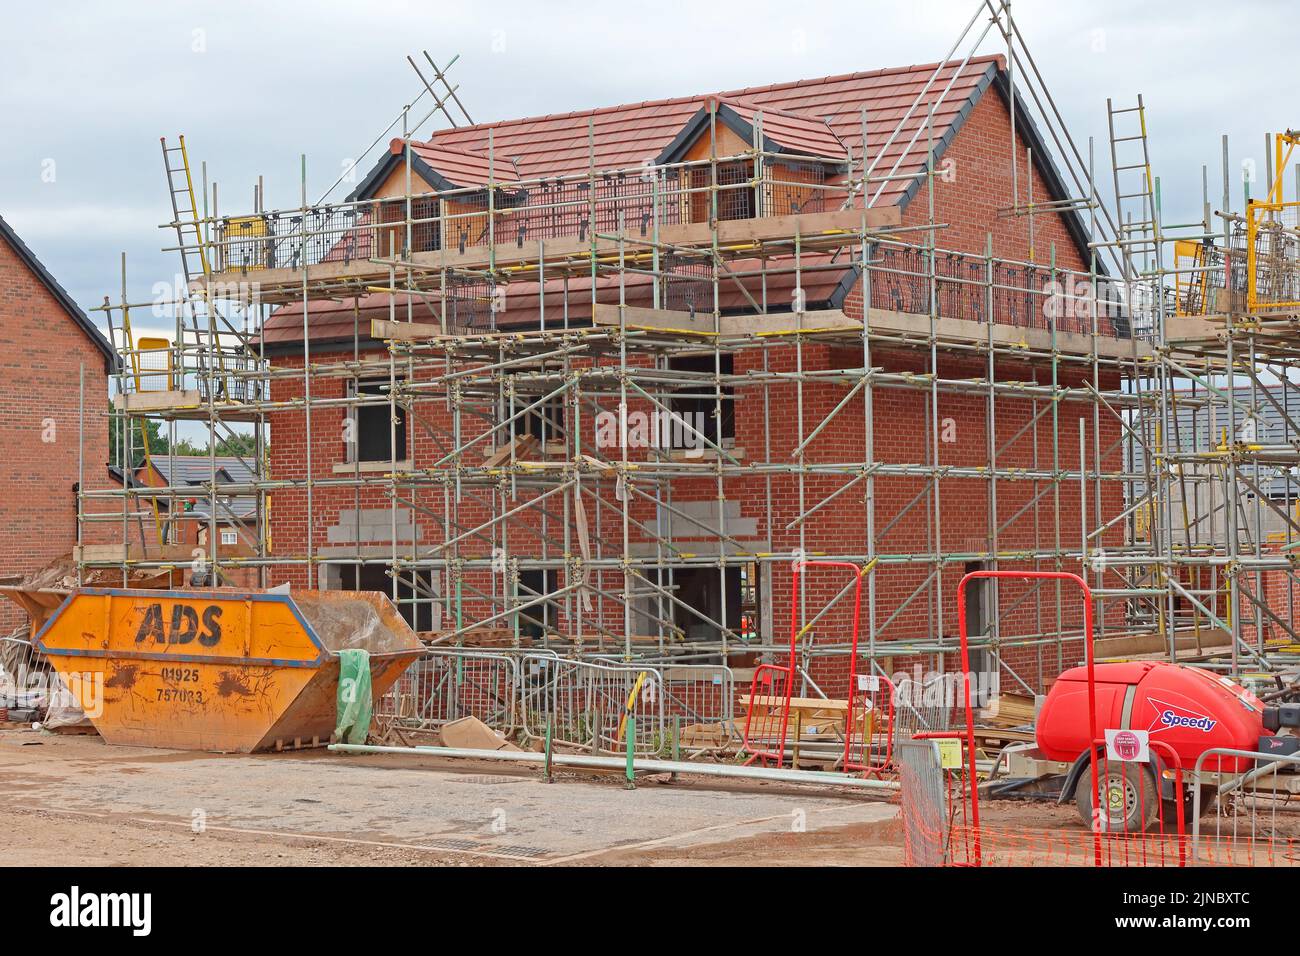 Développement de logements, construction de nouvelles maisons à Grappenhall Heys, Warrington, Cheshire, Angleterre, Royaume-Uni, WA4 3LH Banque D'Images